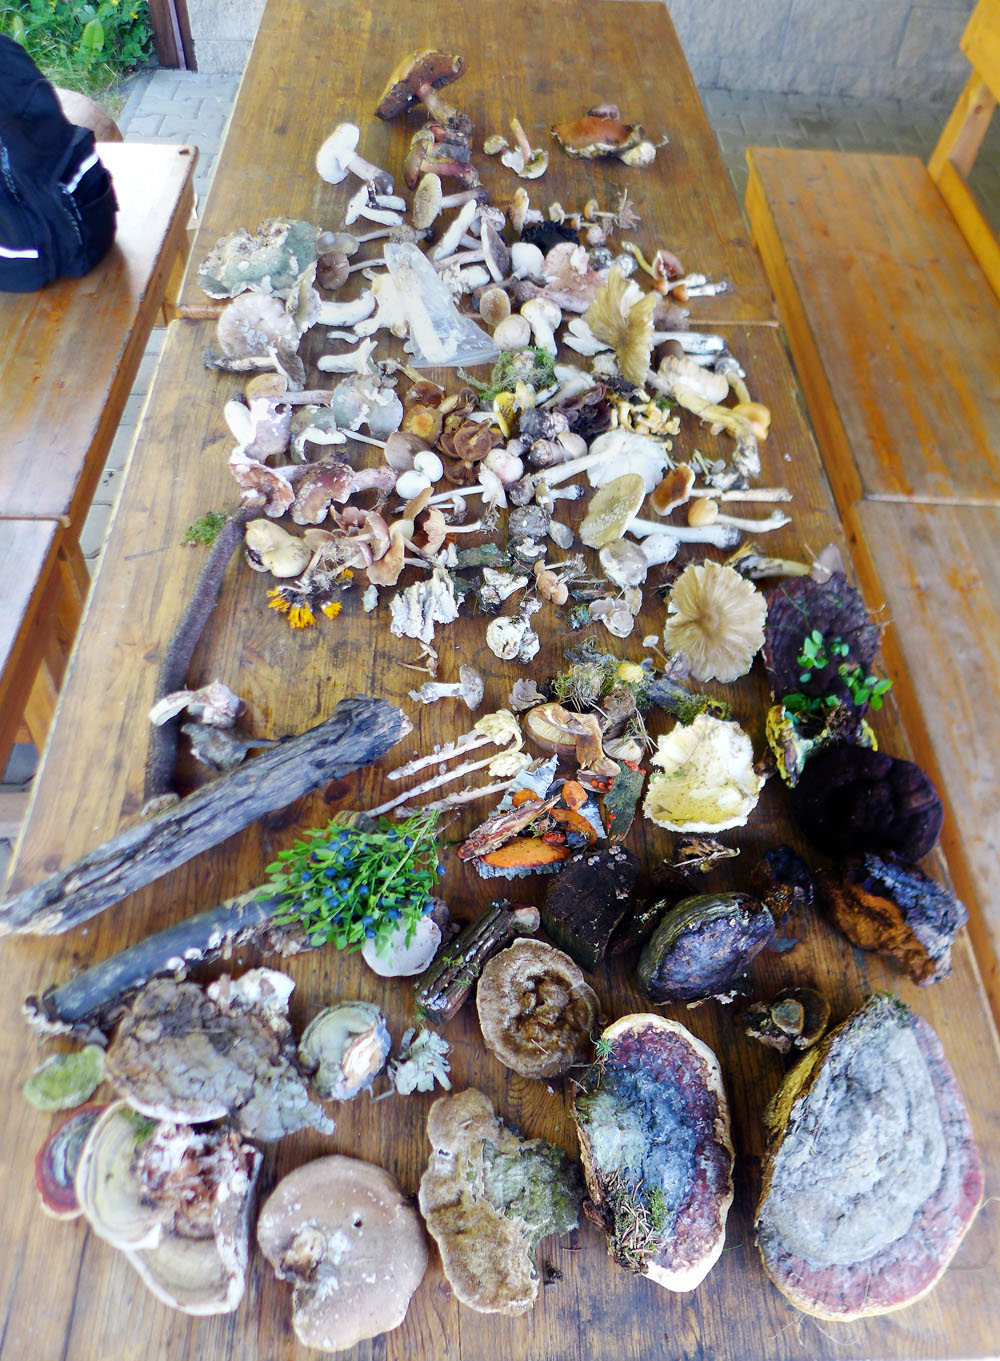 Přehled nalezených druhů hub